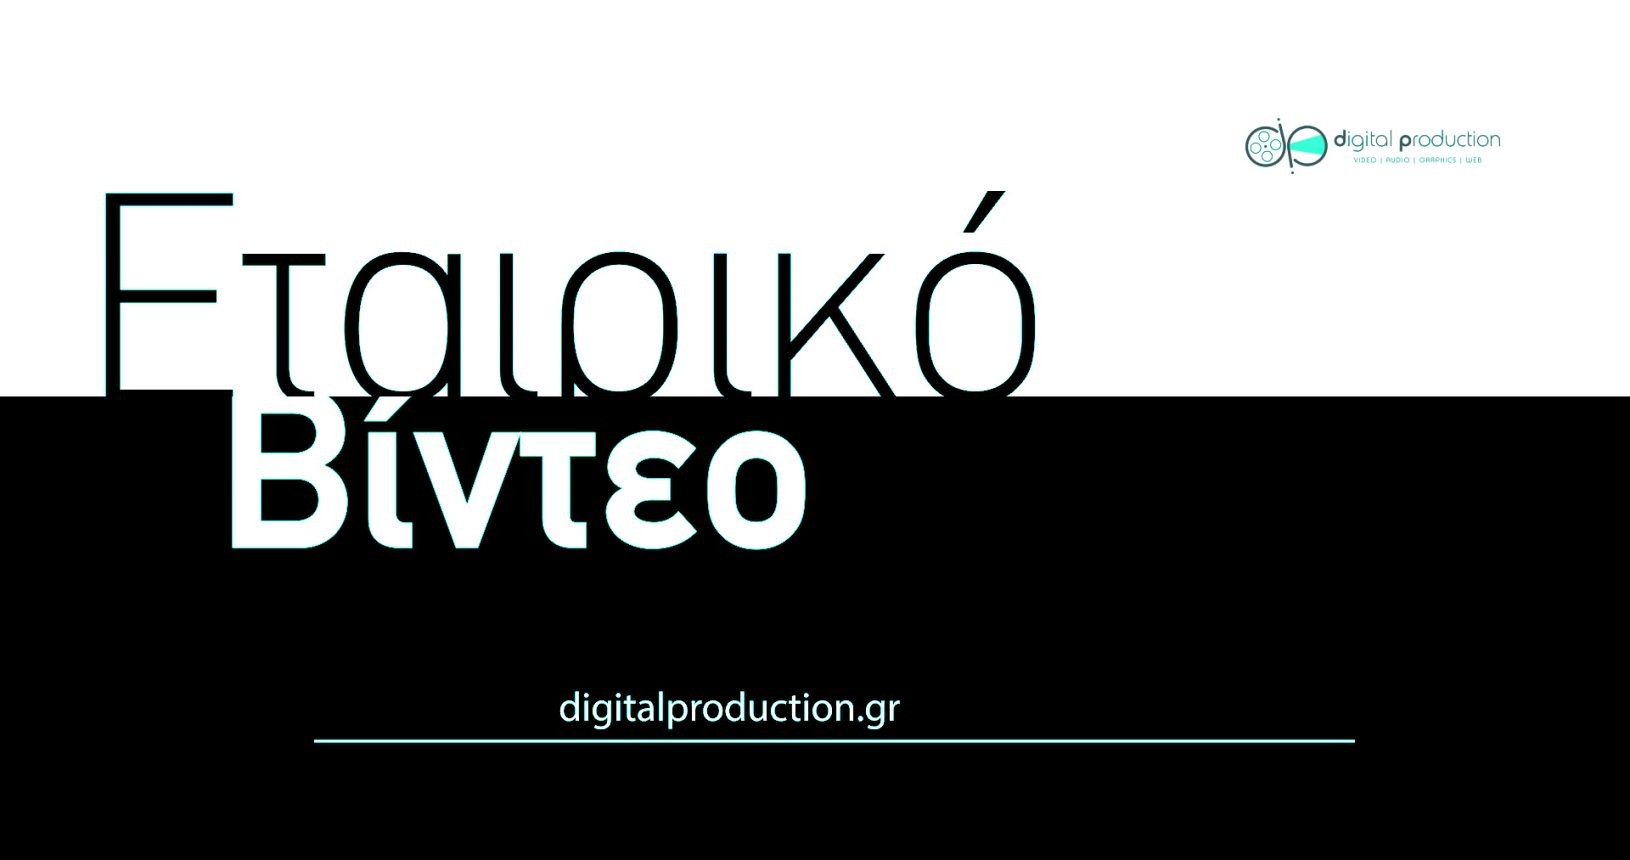 Δημιουργία εταιρικού βίντεο, corporate video | Digital Production